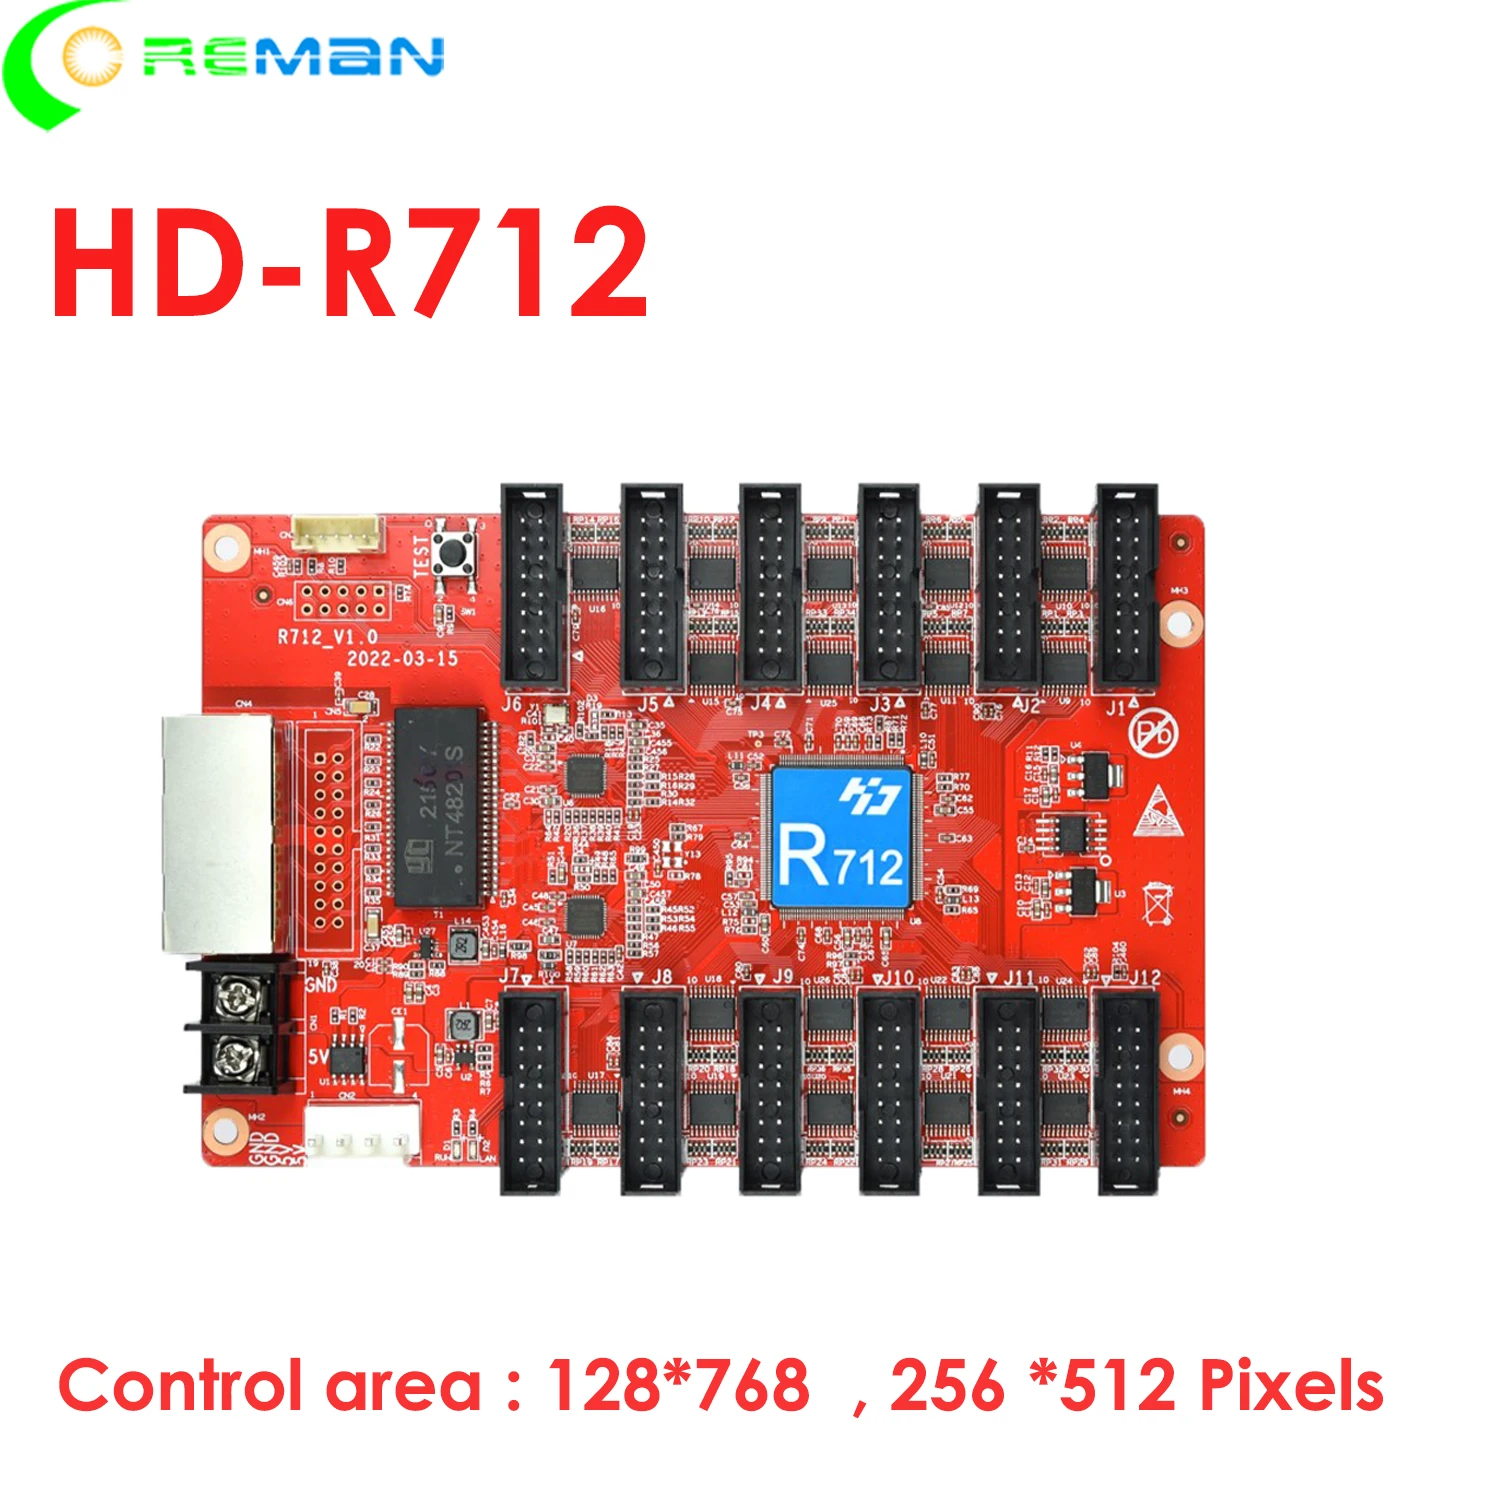 Huidu led control card led приемна карта R712 за полноцветного led модул hub75, led матрица p2 p2.5 p3 p4 p5